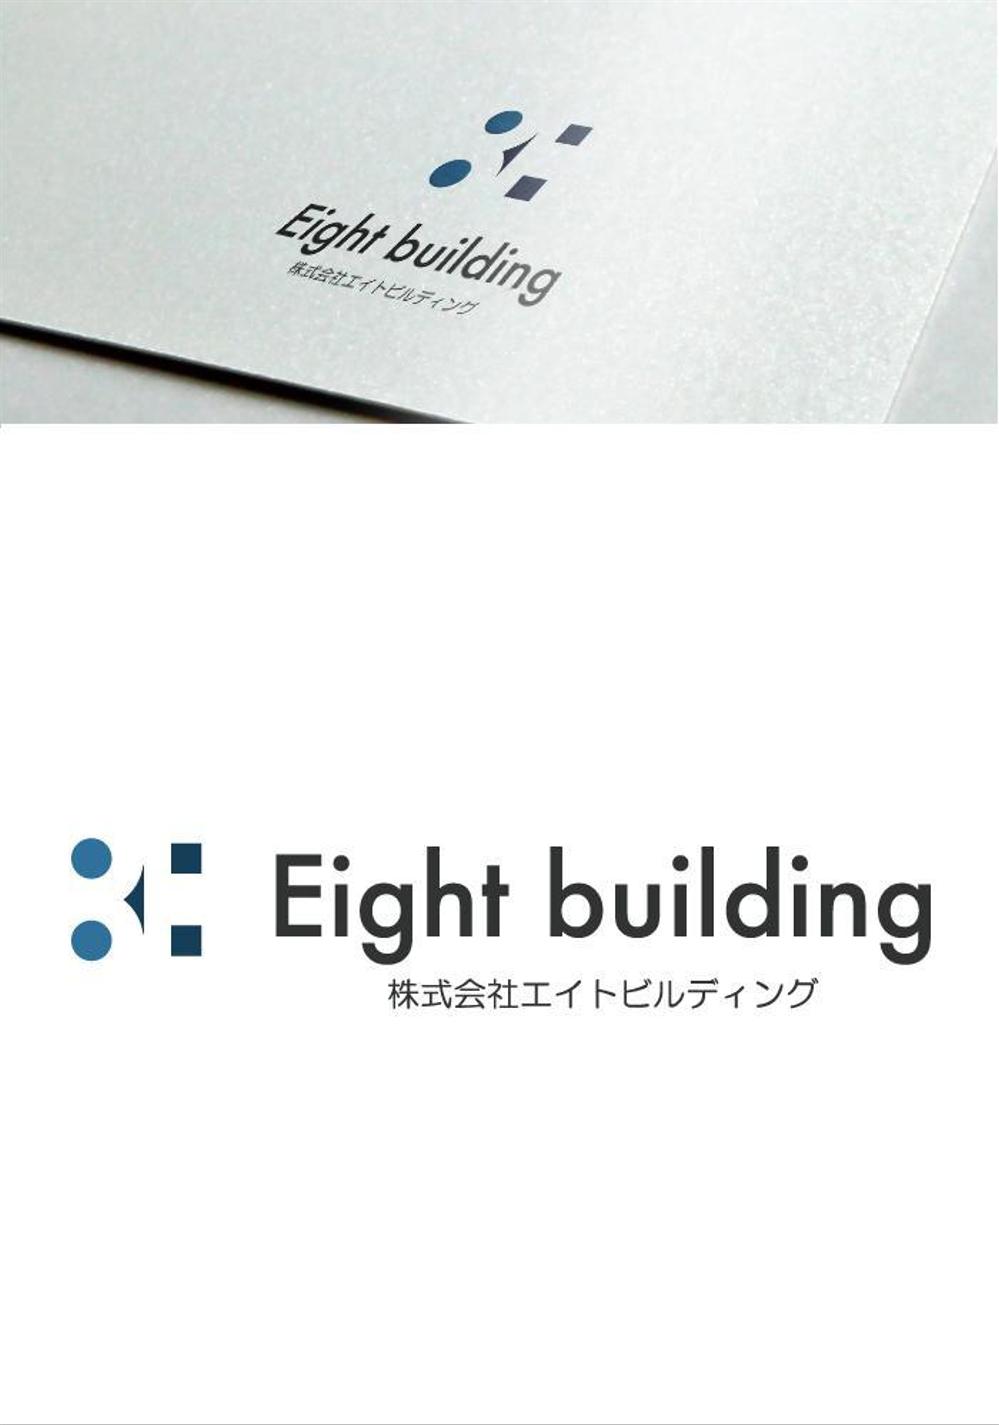 「株式会社エイトビルディング」のロゴ・シンボルマーク